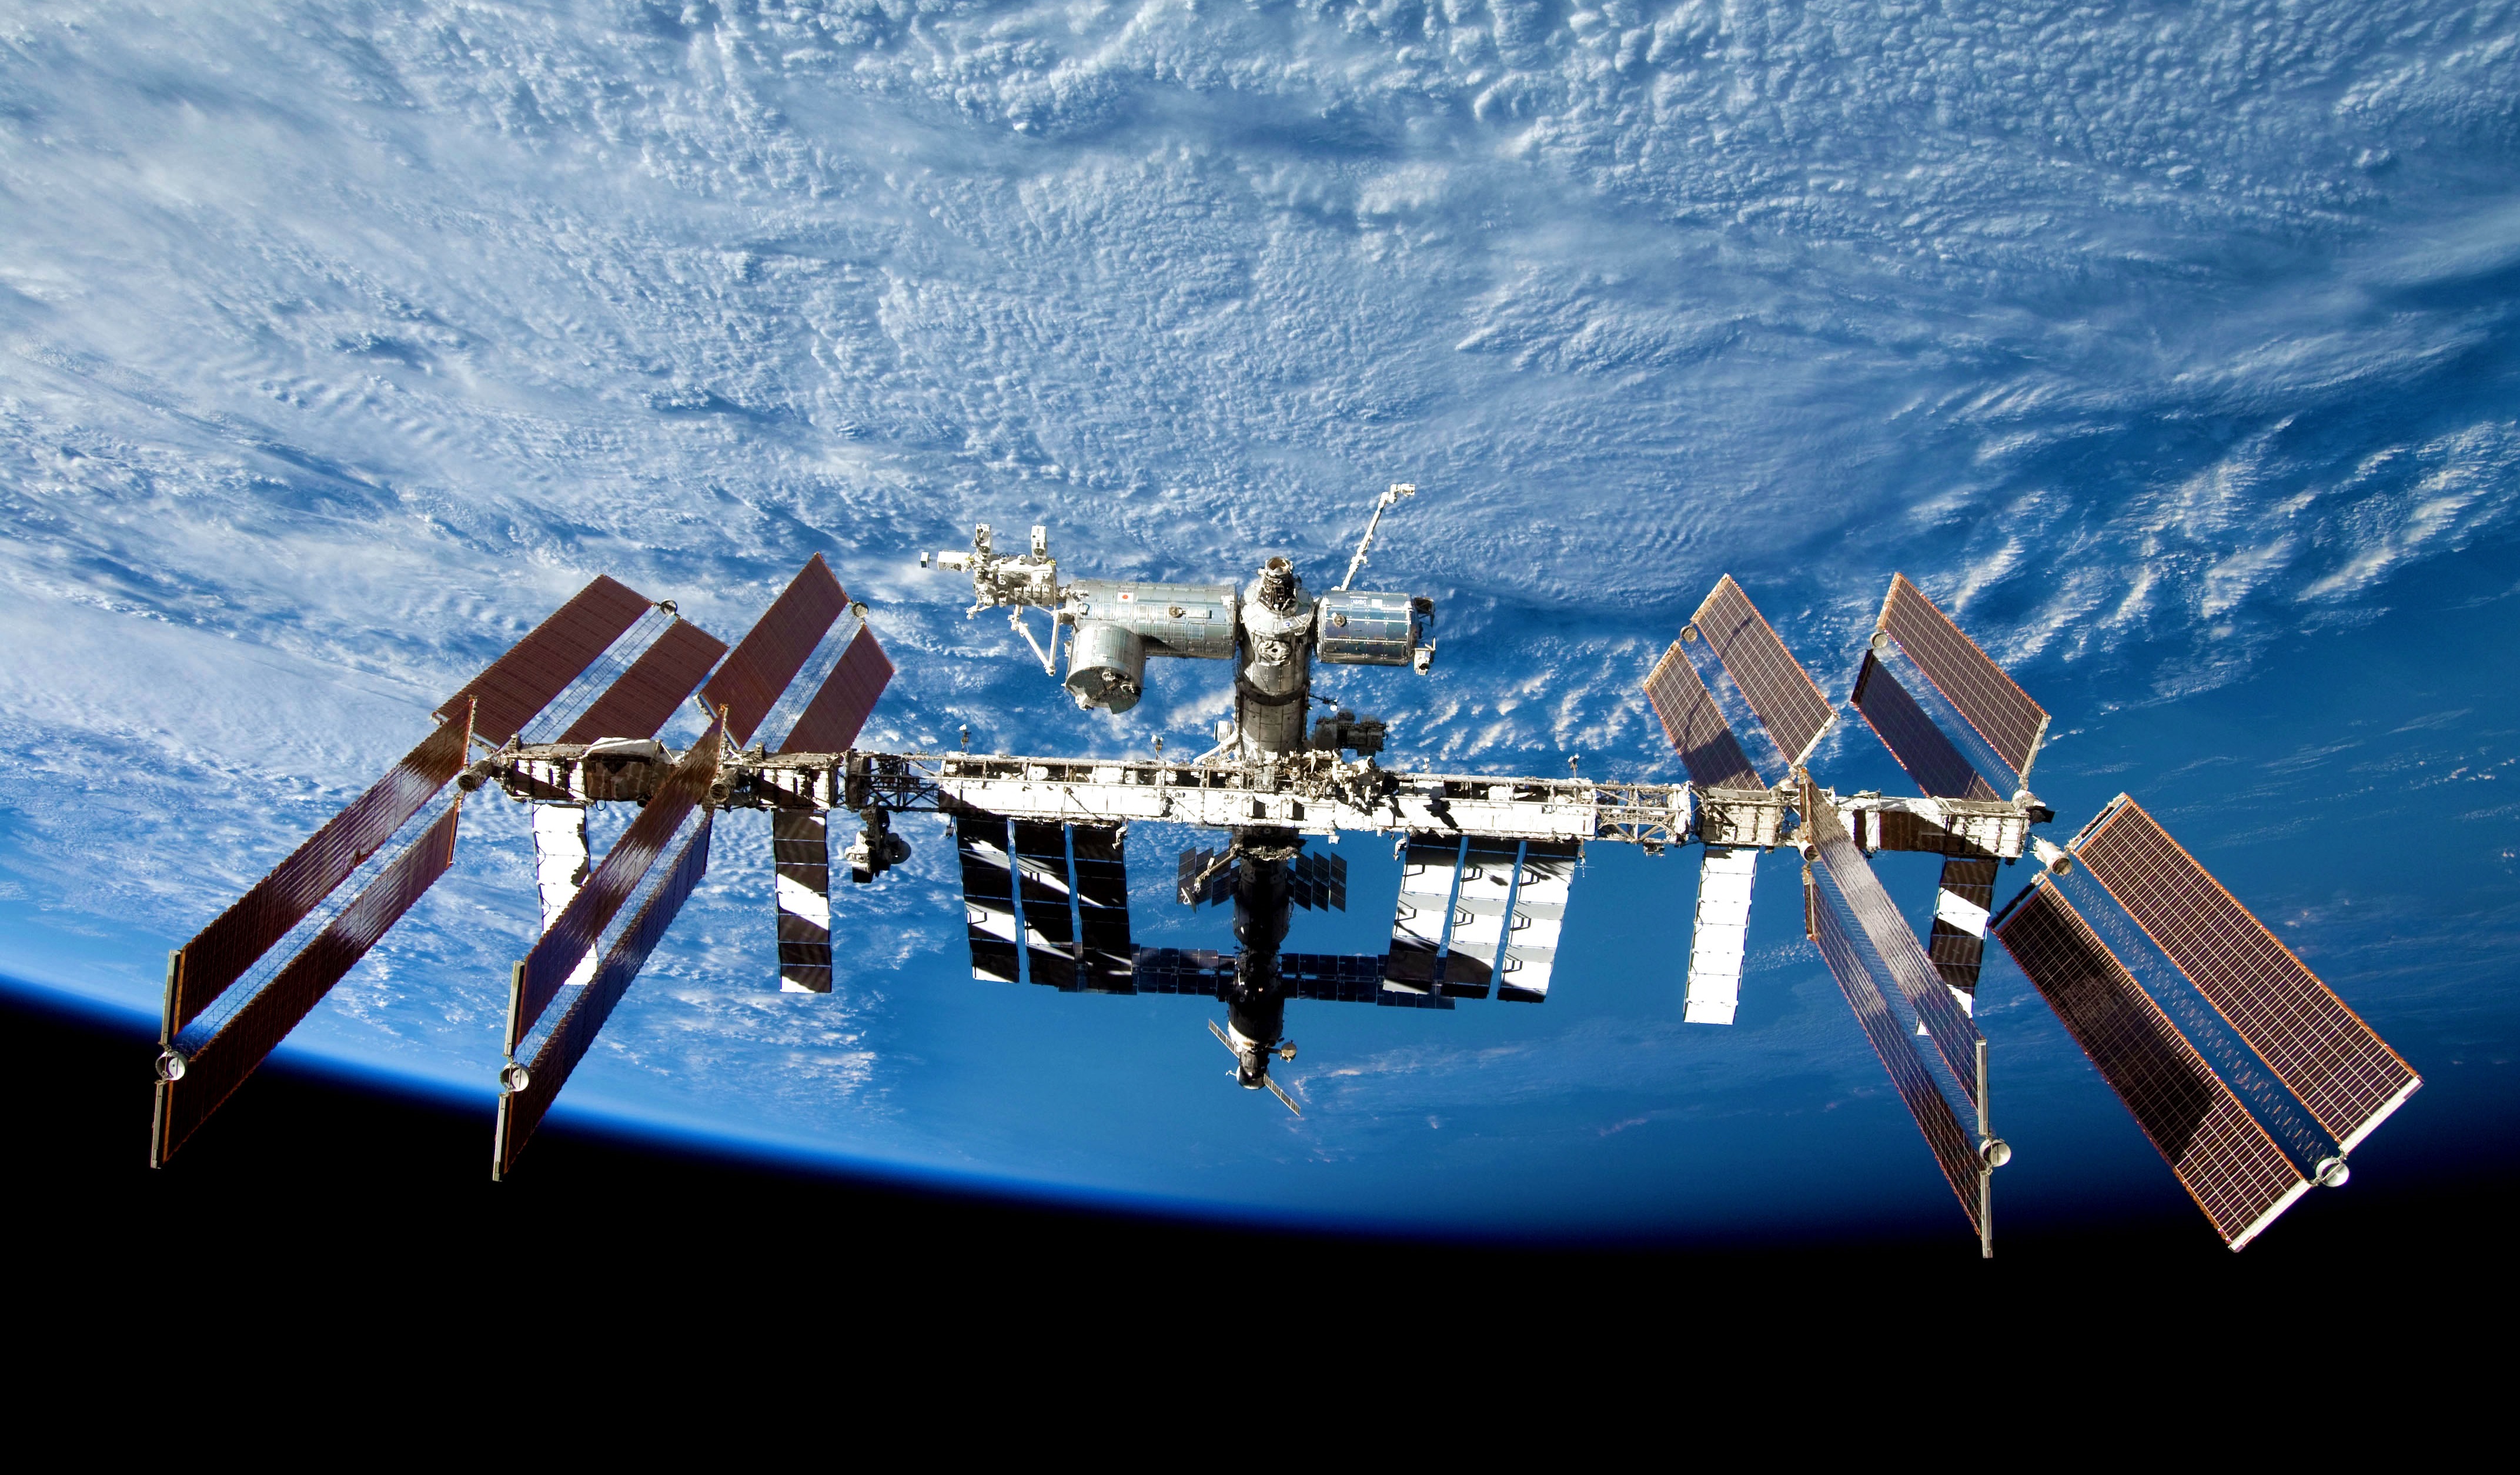 Πεντάωρος περίπατος στο διάστημα για αλλαγή μπαταριών! Η απορία των αστροναυτών πάνω από τη Μεσόγειο!